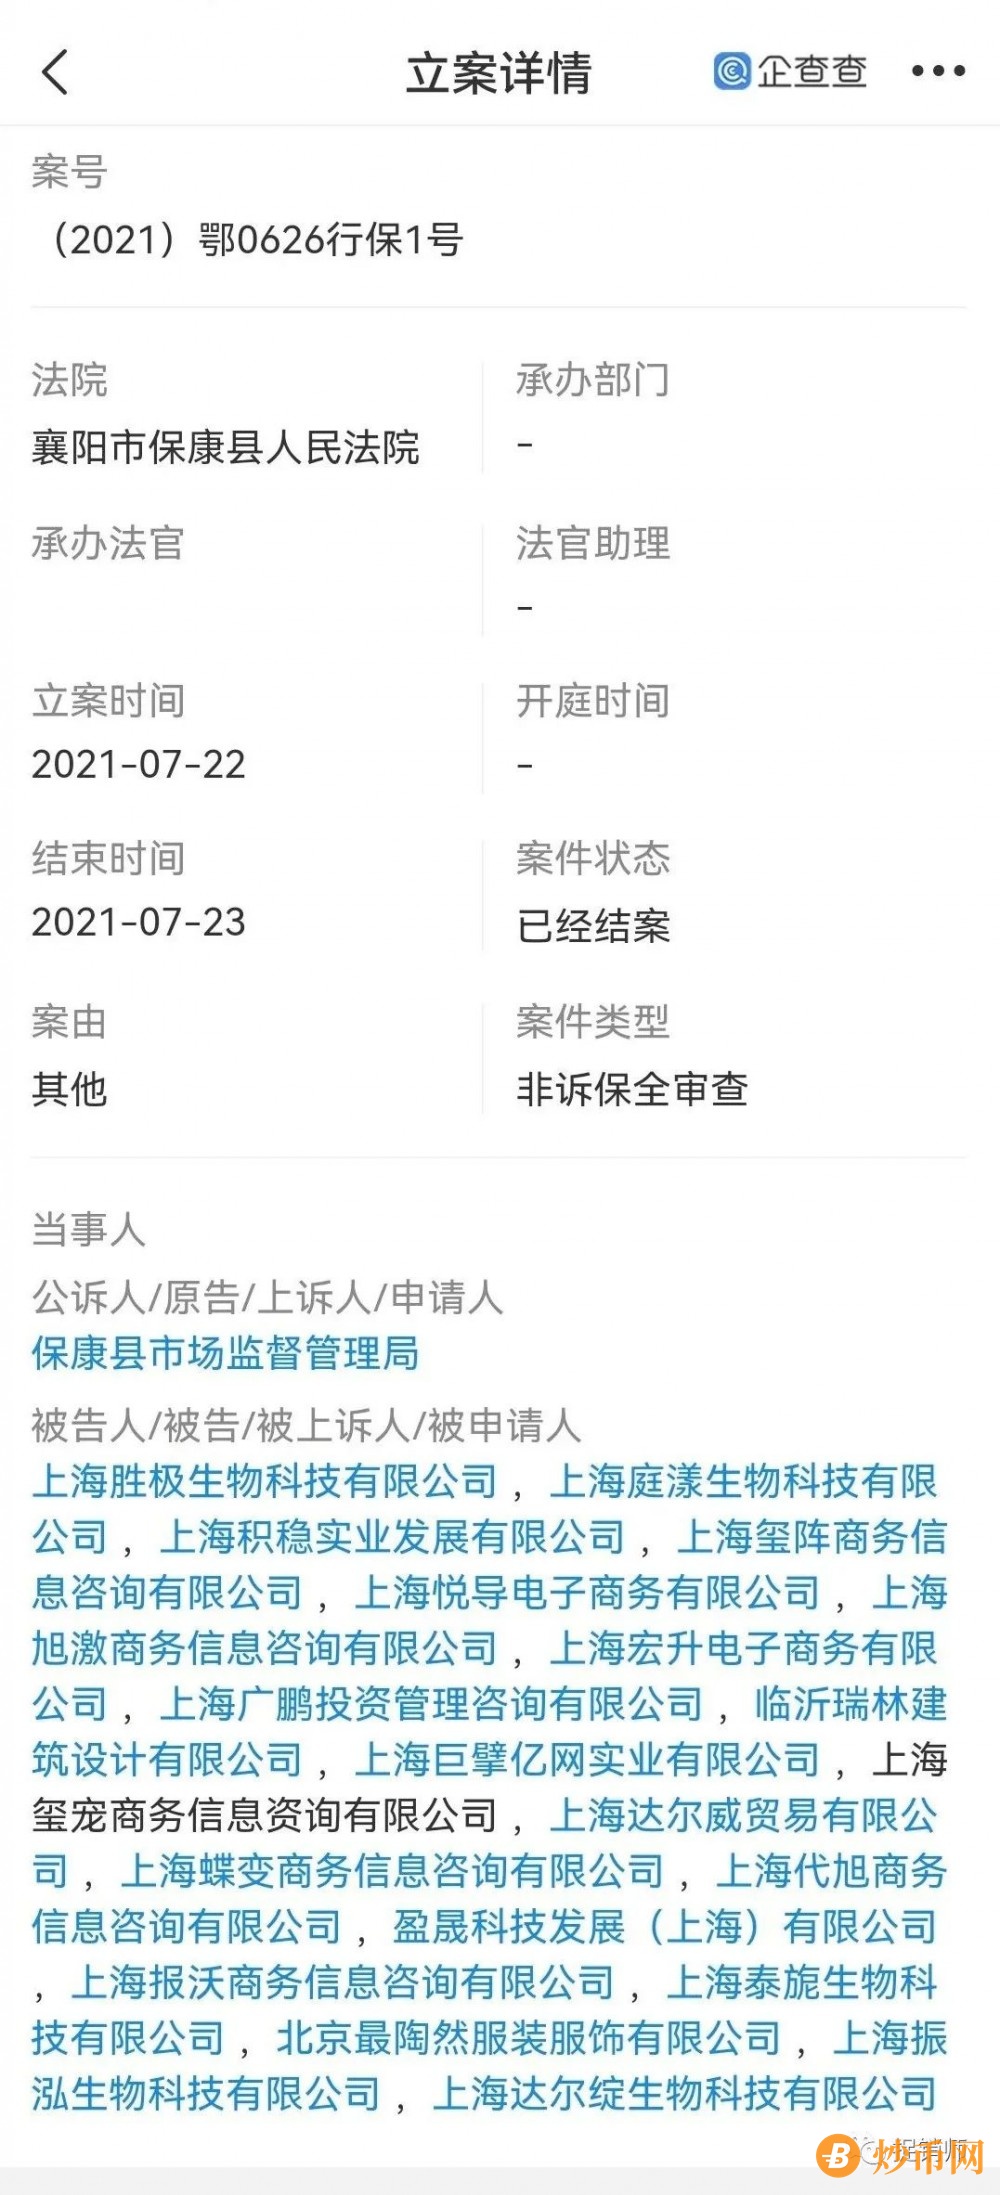 此前曾遭保全审查的上海达尔威因涉嫌网络传销遭冻账6亿元插图2